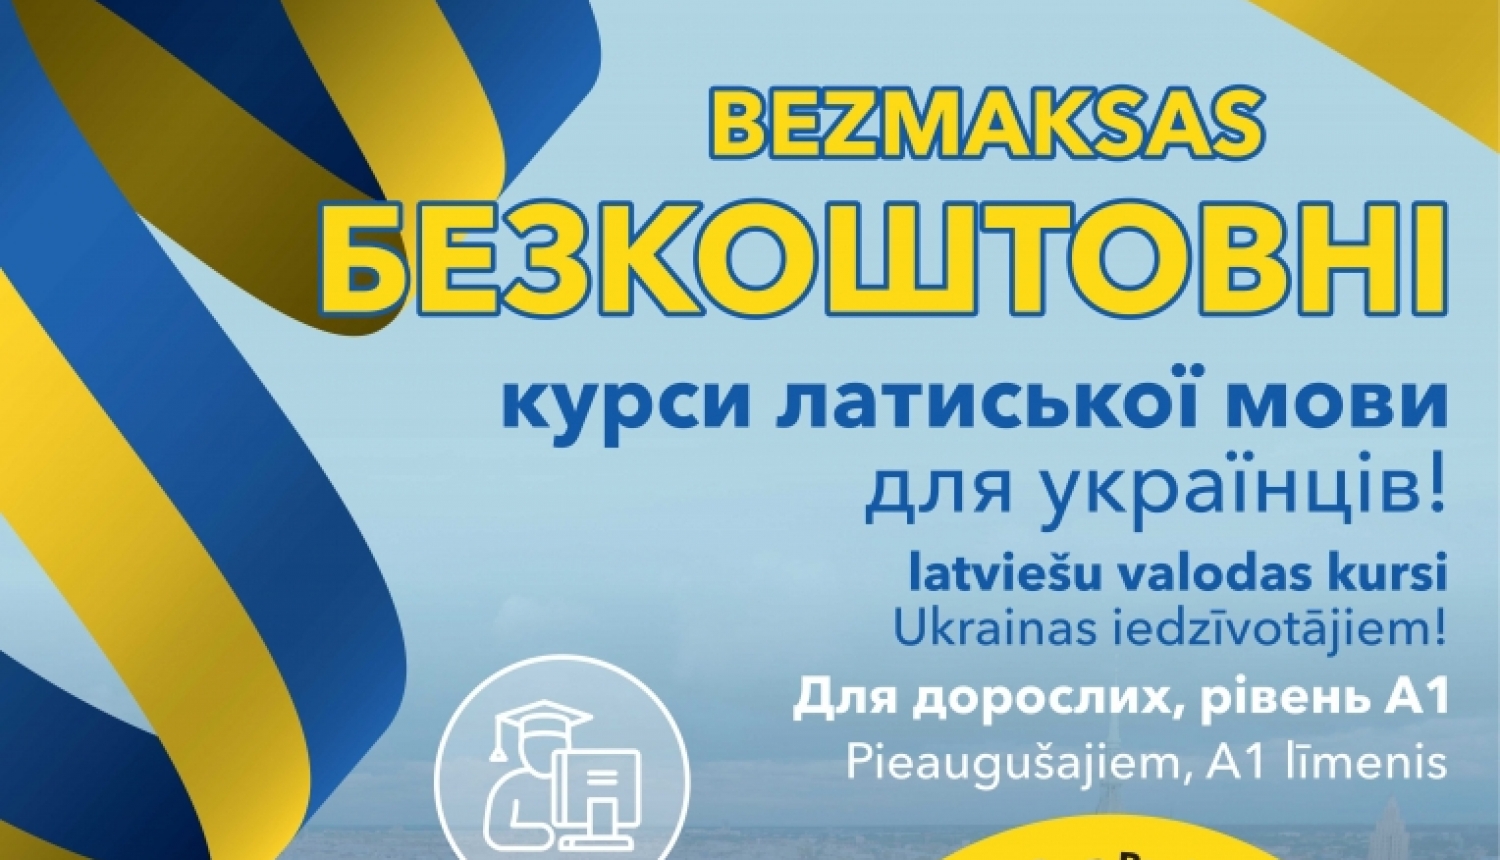 Latviešu valodas kursiem ukraiņiem/Изучение латышского языка для граждан Украины